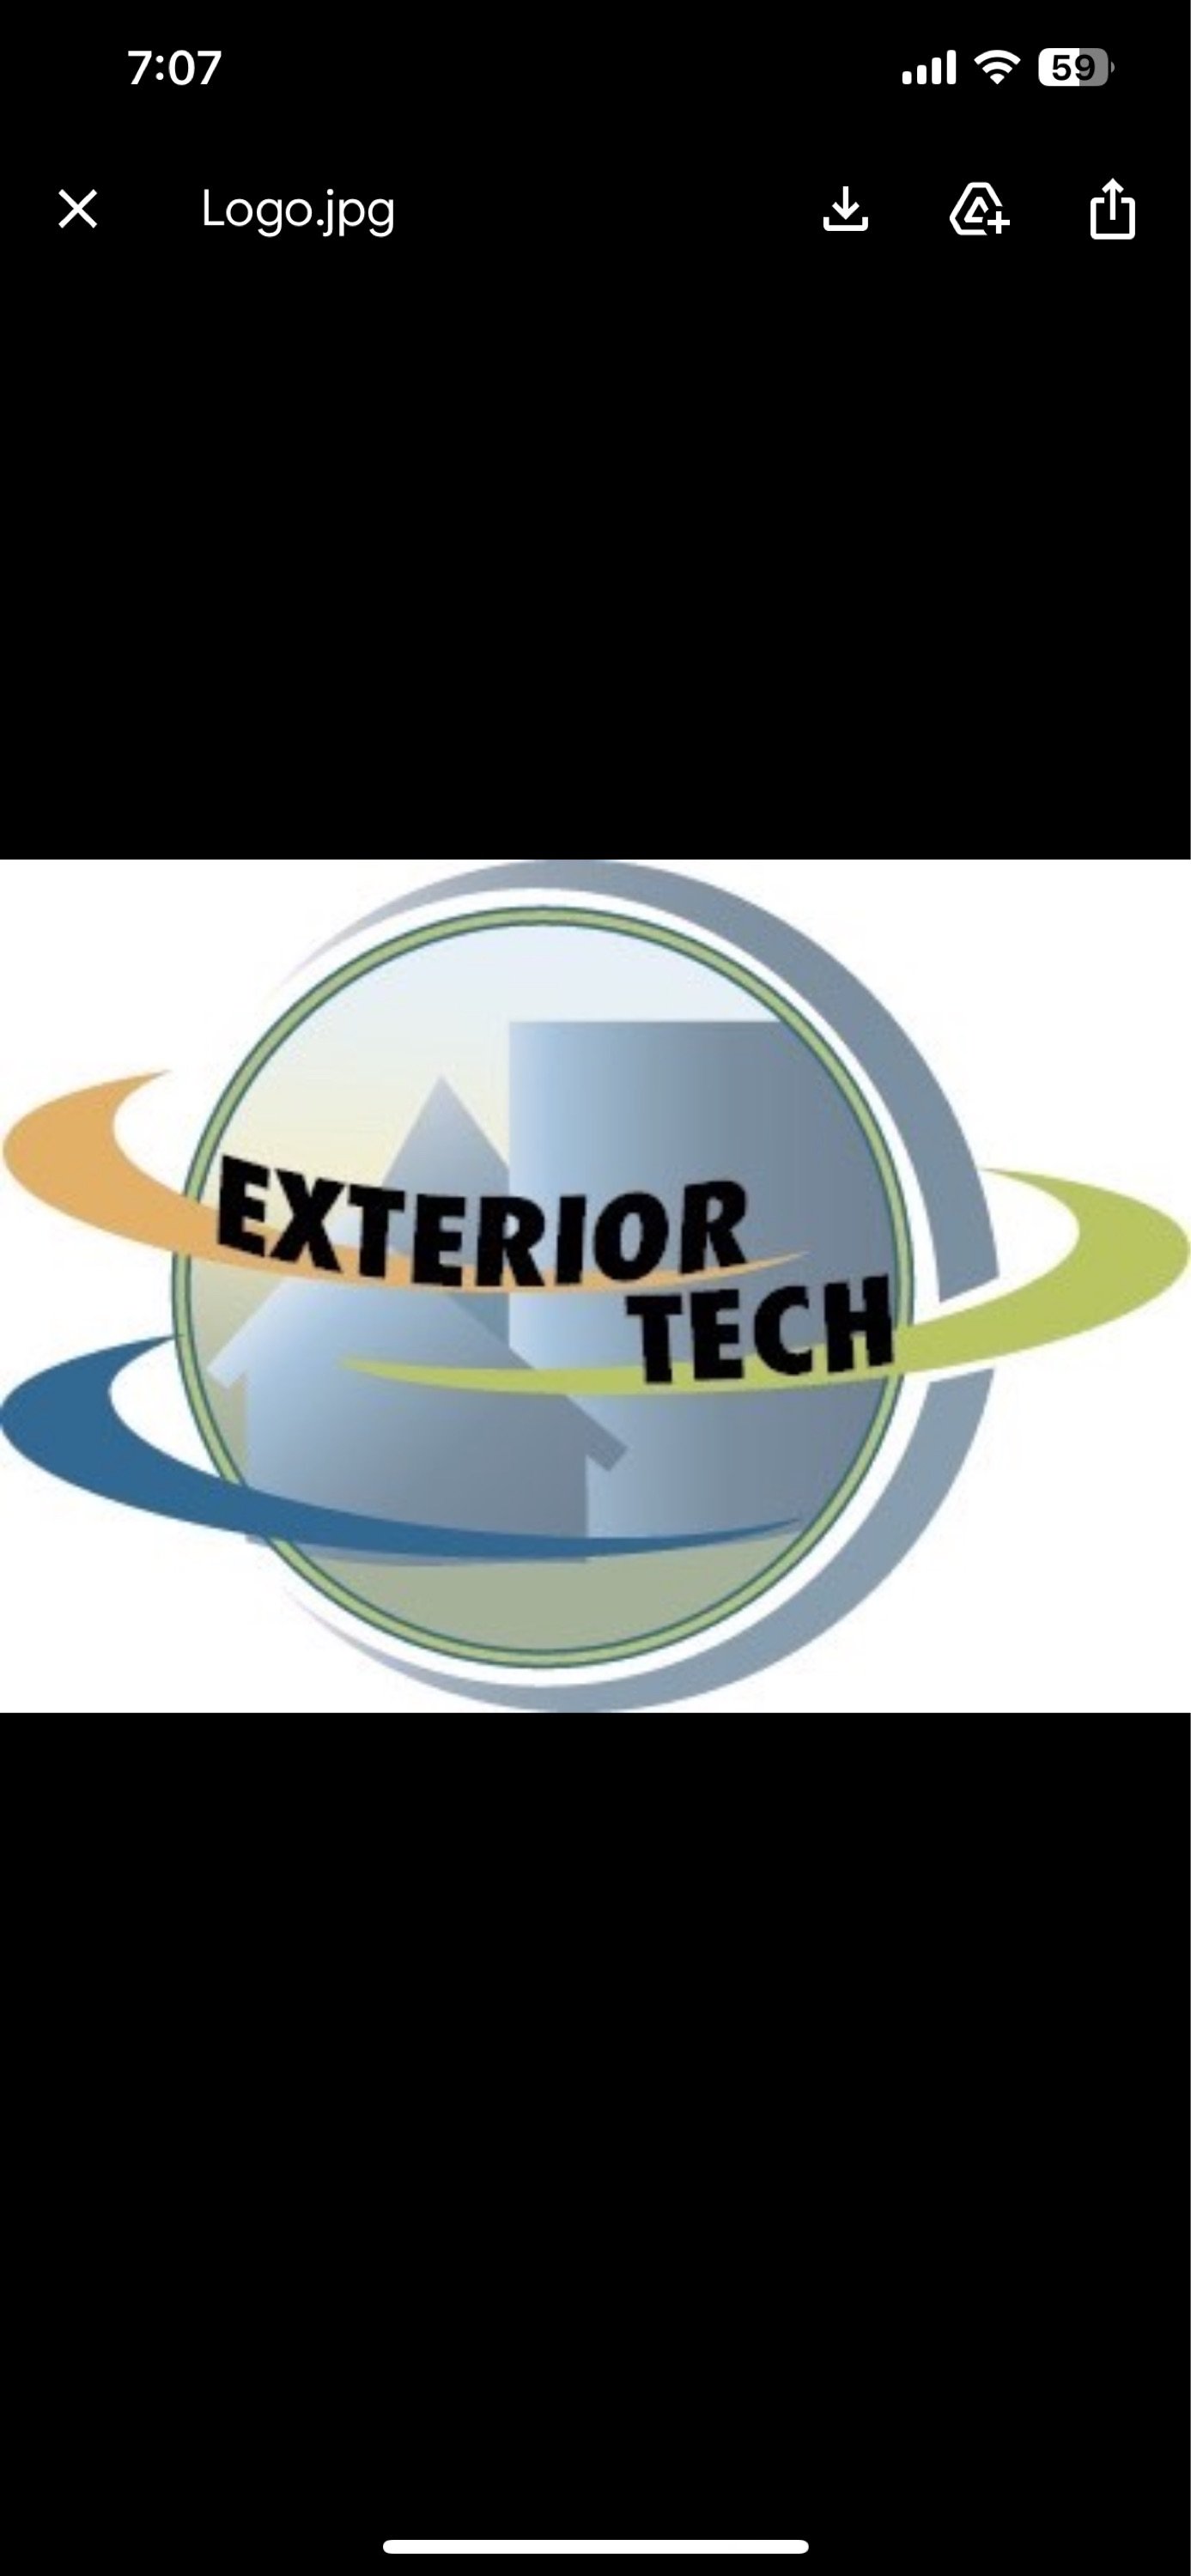 Exterior Tech Siding & Roofing Logo